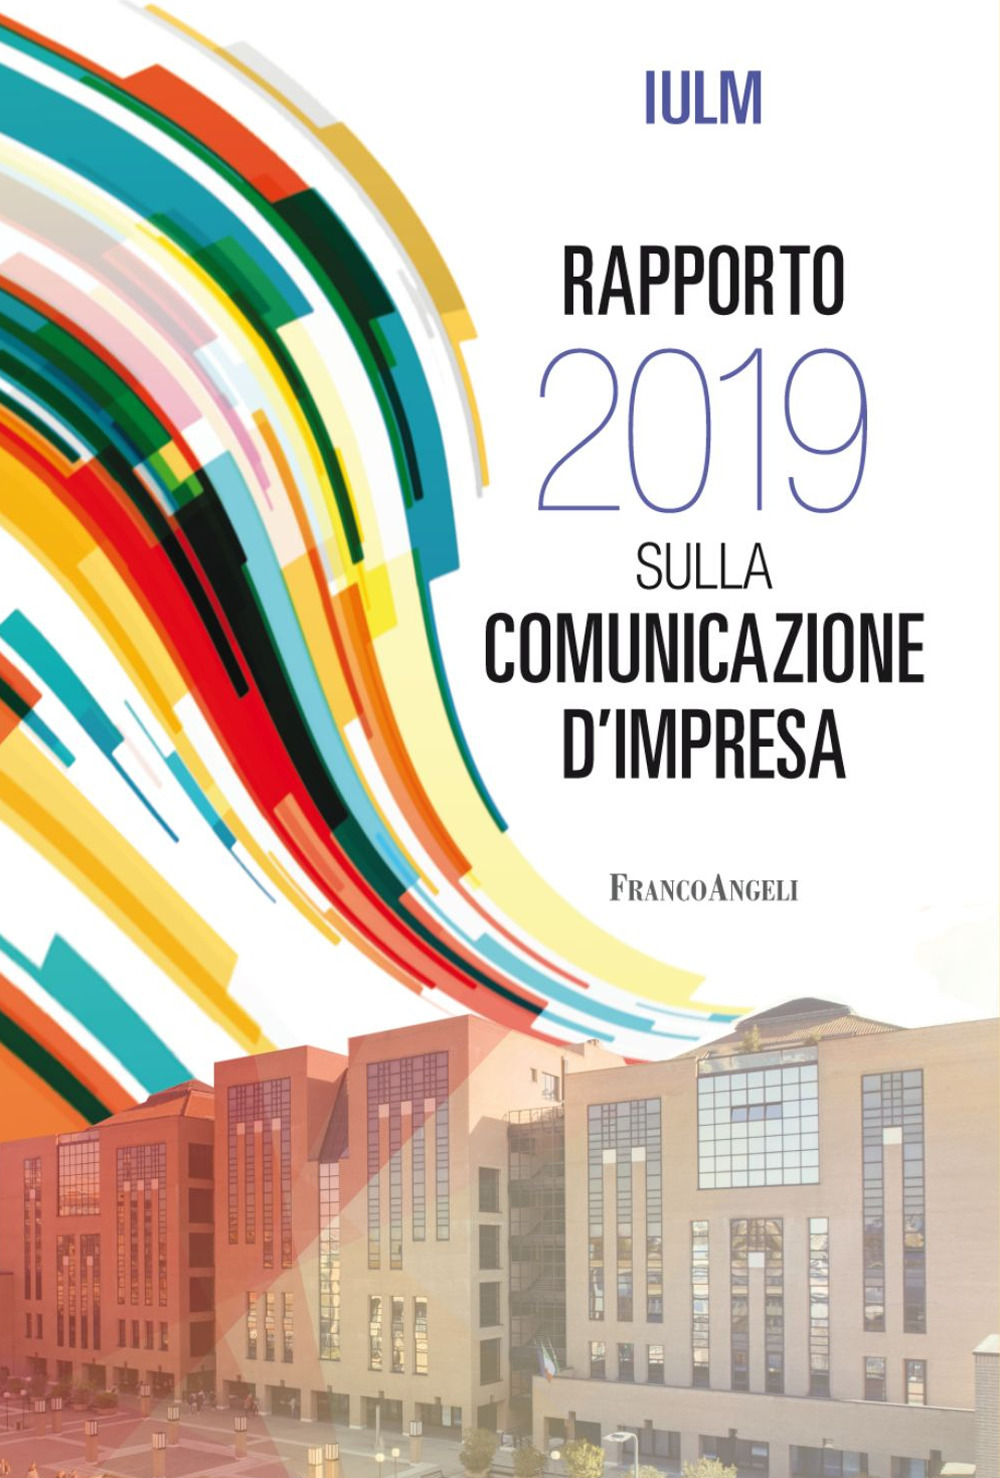 Image of Rapporto IULM 2019 sulla comunicazione d'impresa